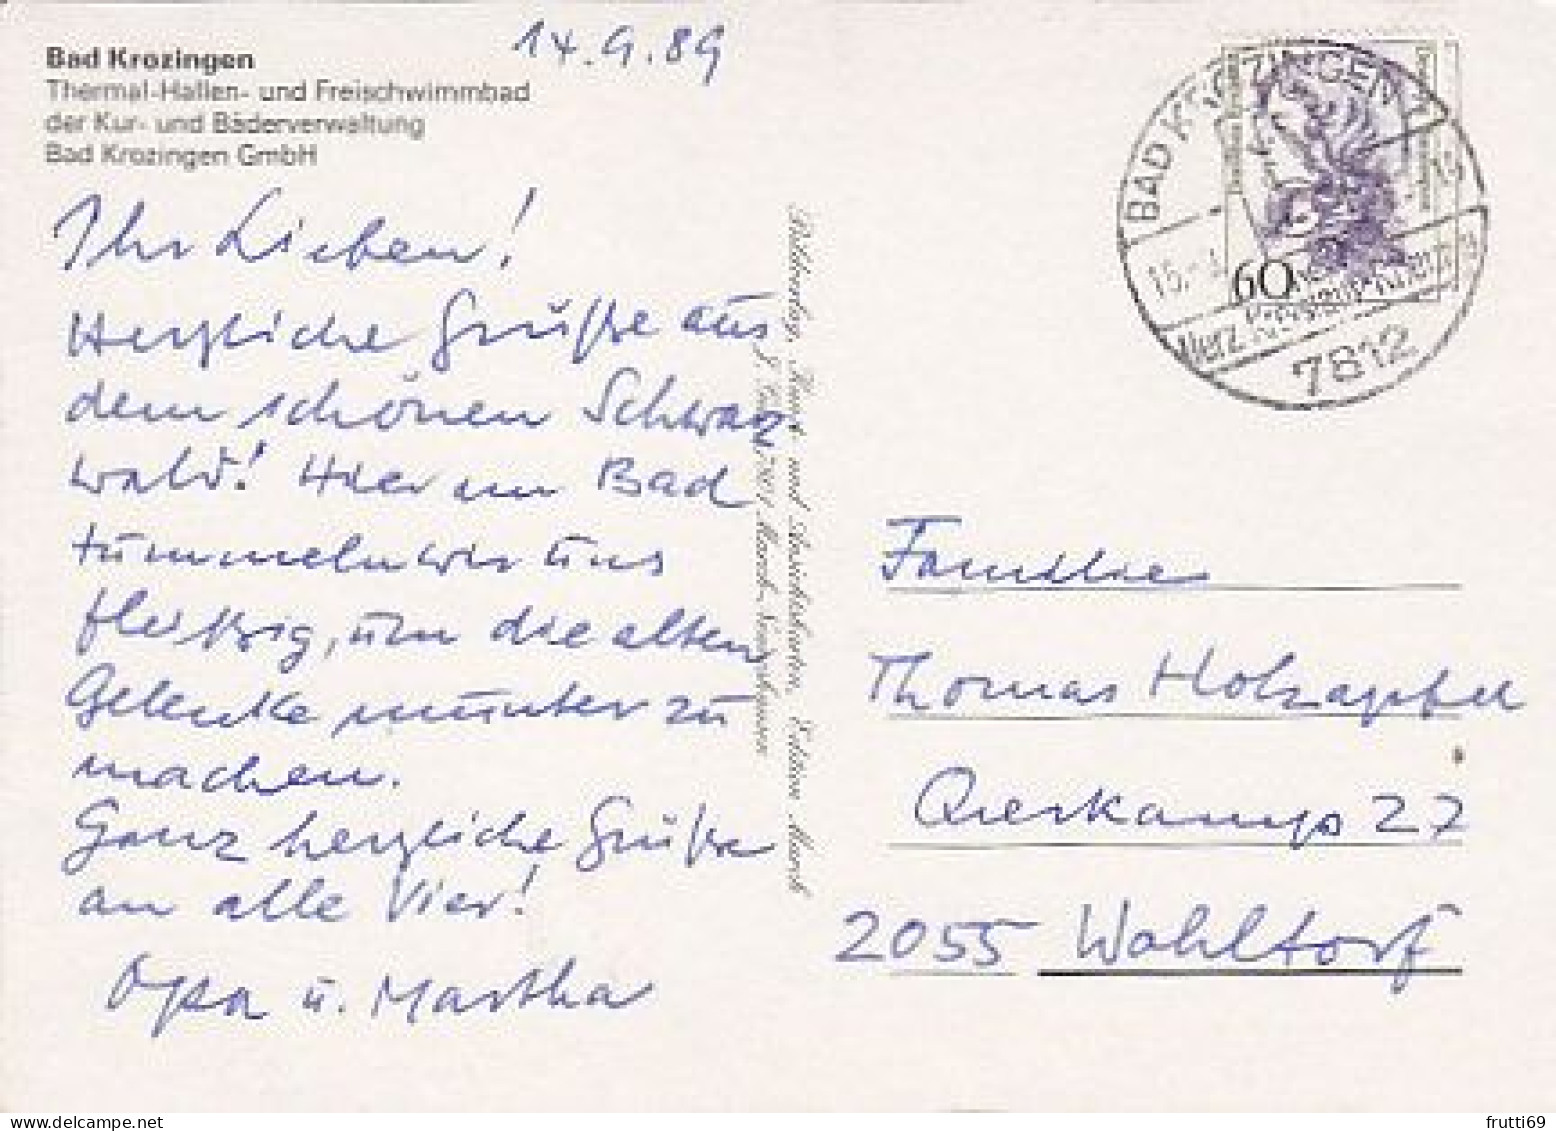 AK 192313 GERMANY - Bad Krozingen - Thermal-Hallen- Und Freischwimmbad - Bad Krozingen